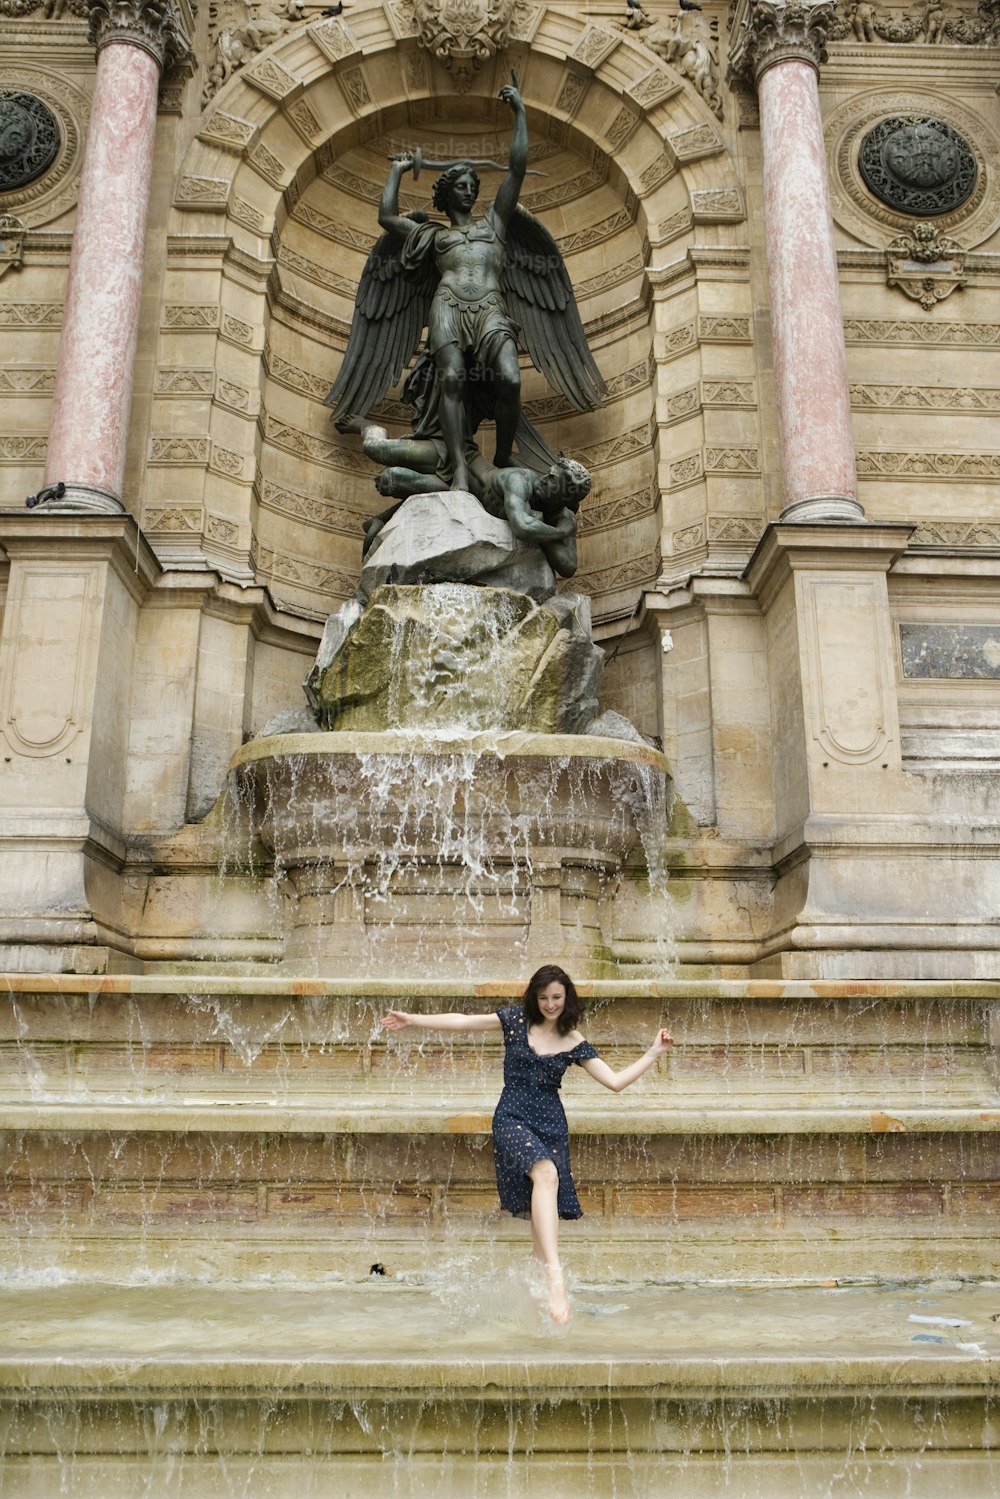 Une femme pose devant une fontaine